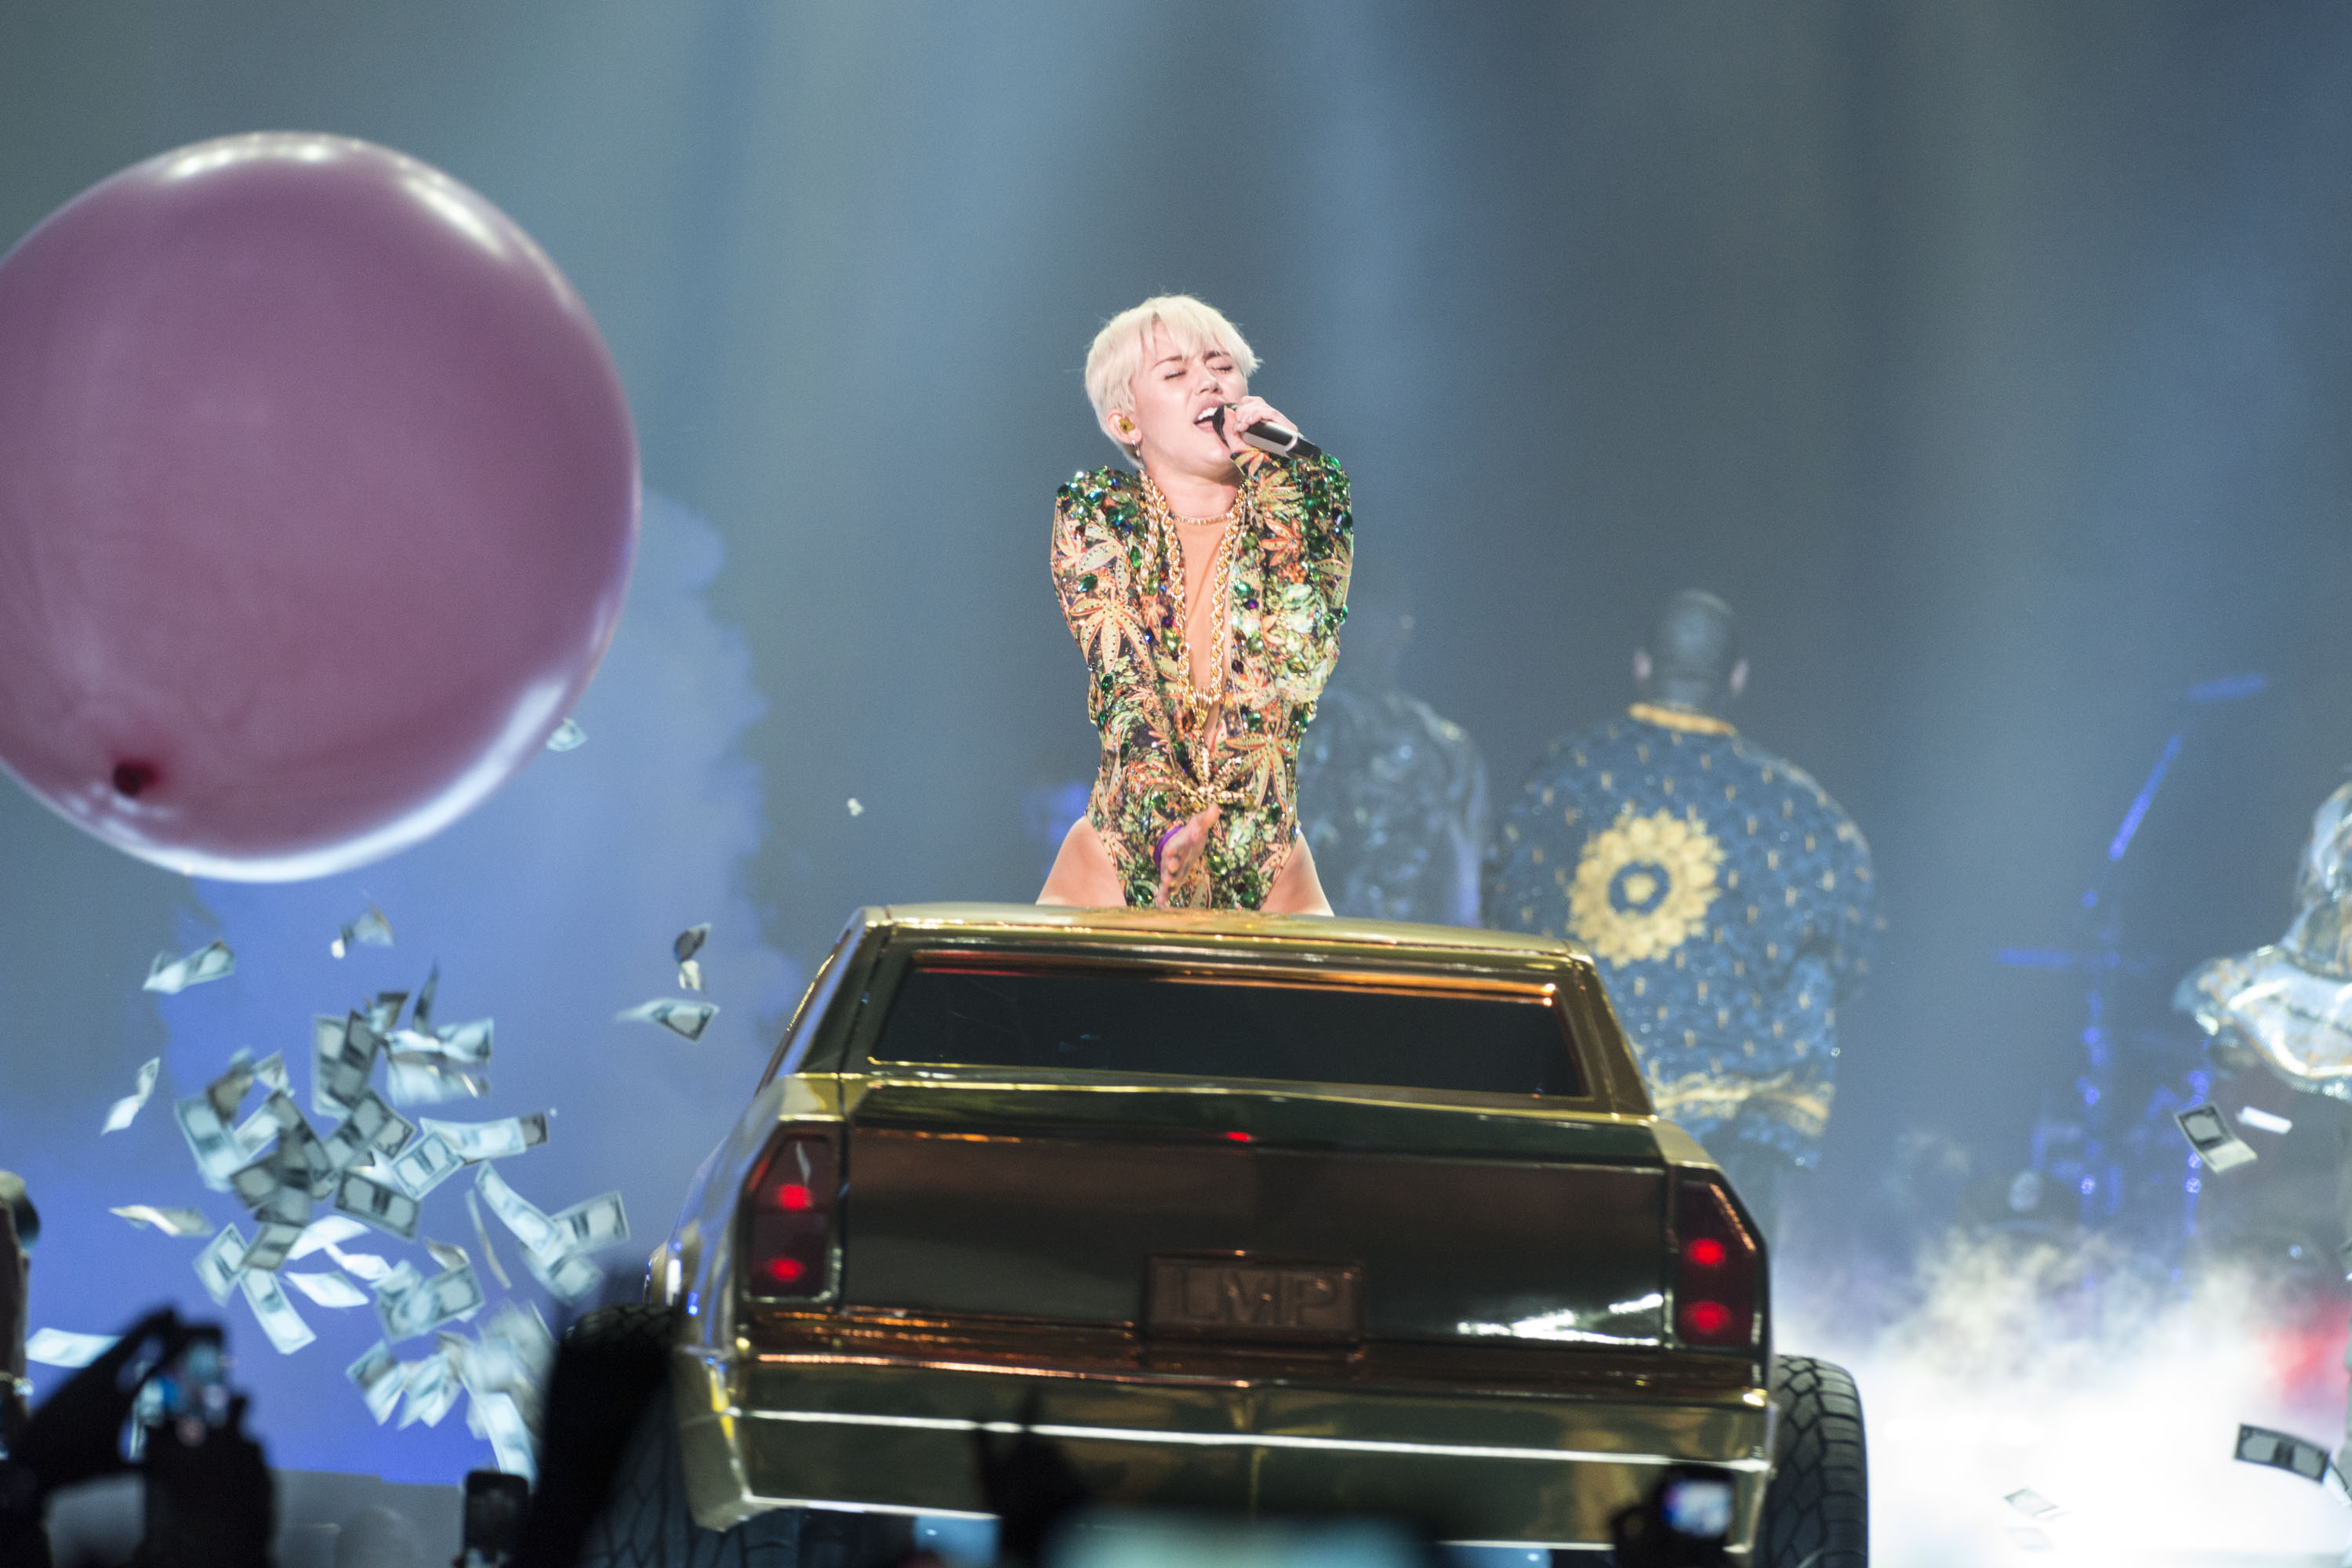 Miley Cyrus Gives Blow Job